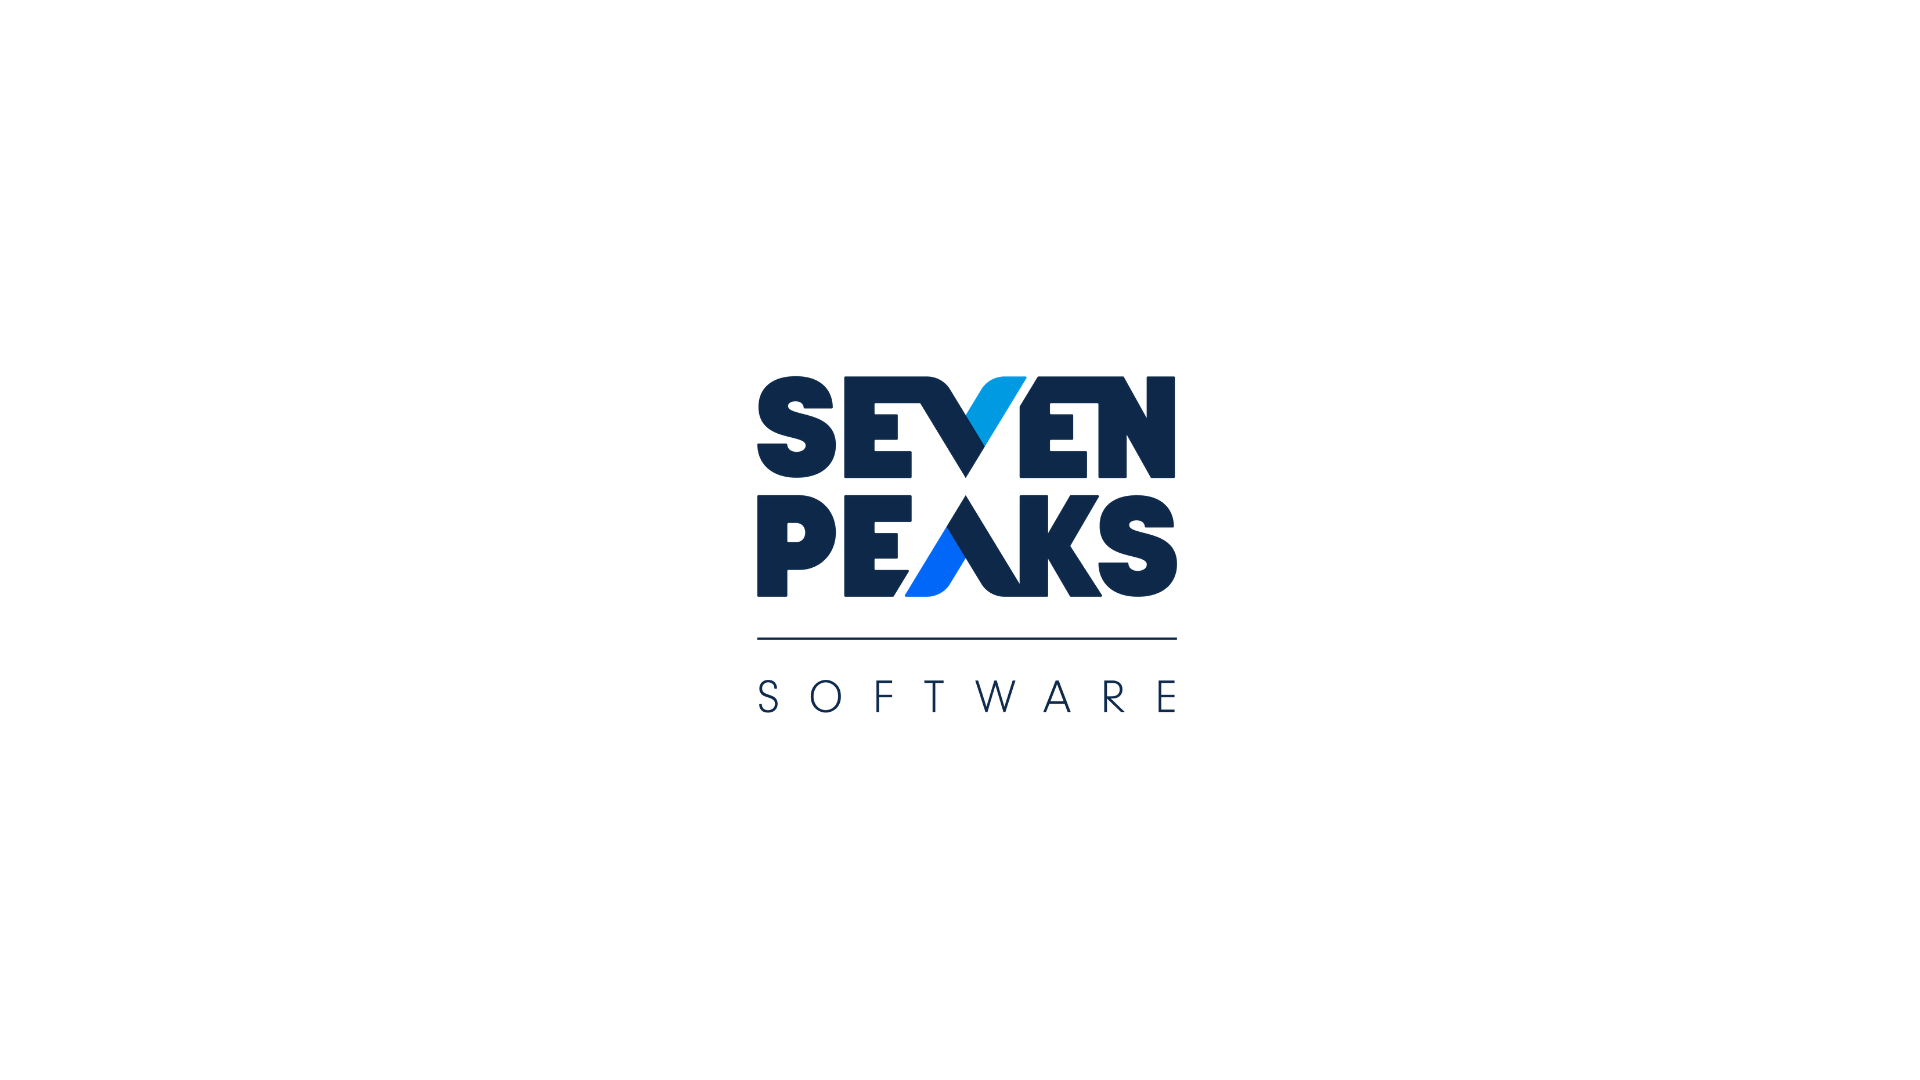 7 Peaks Software Co., Ltd.